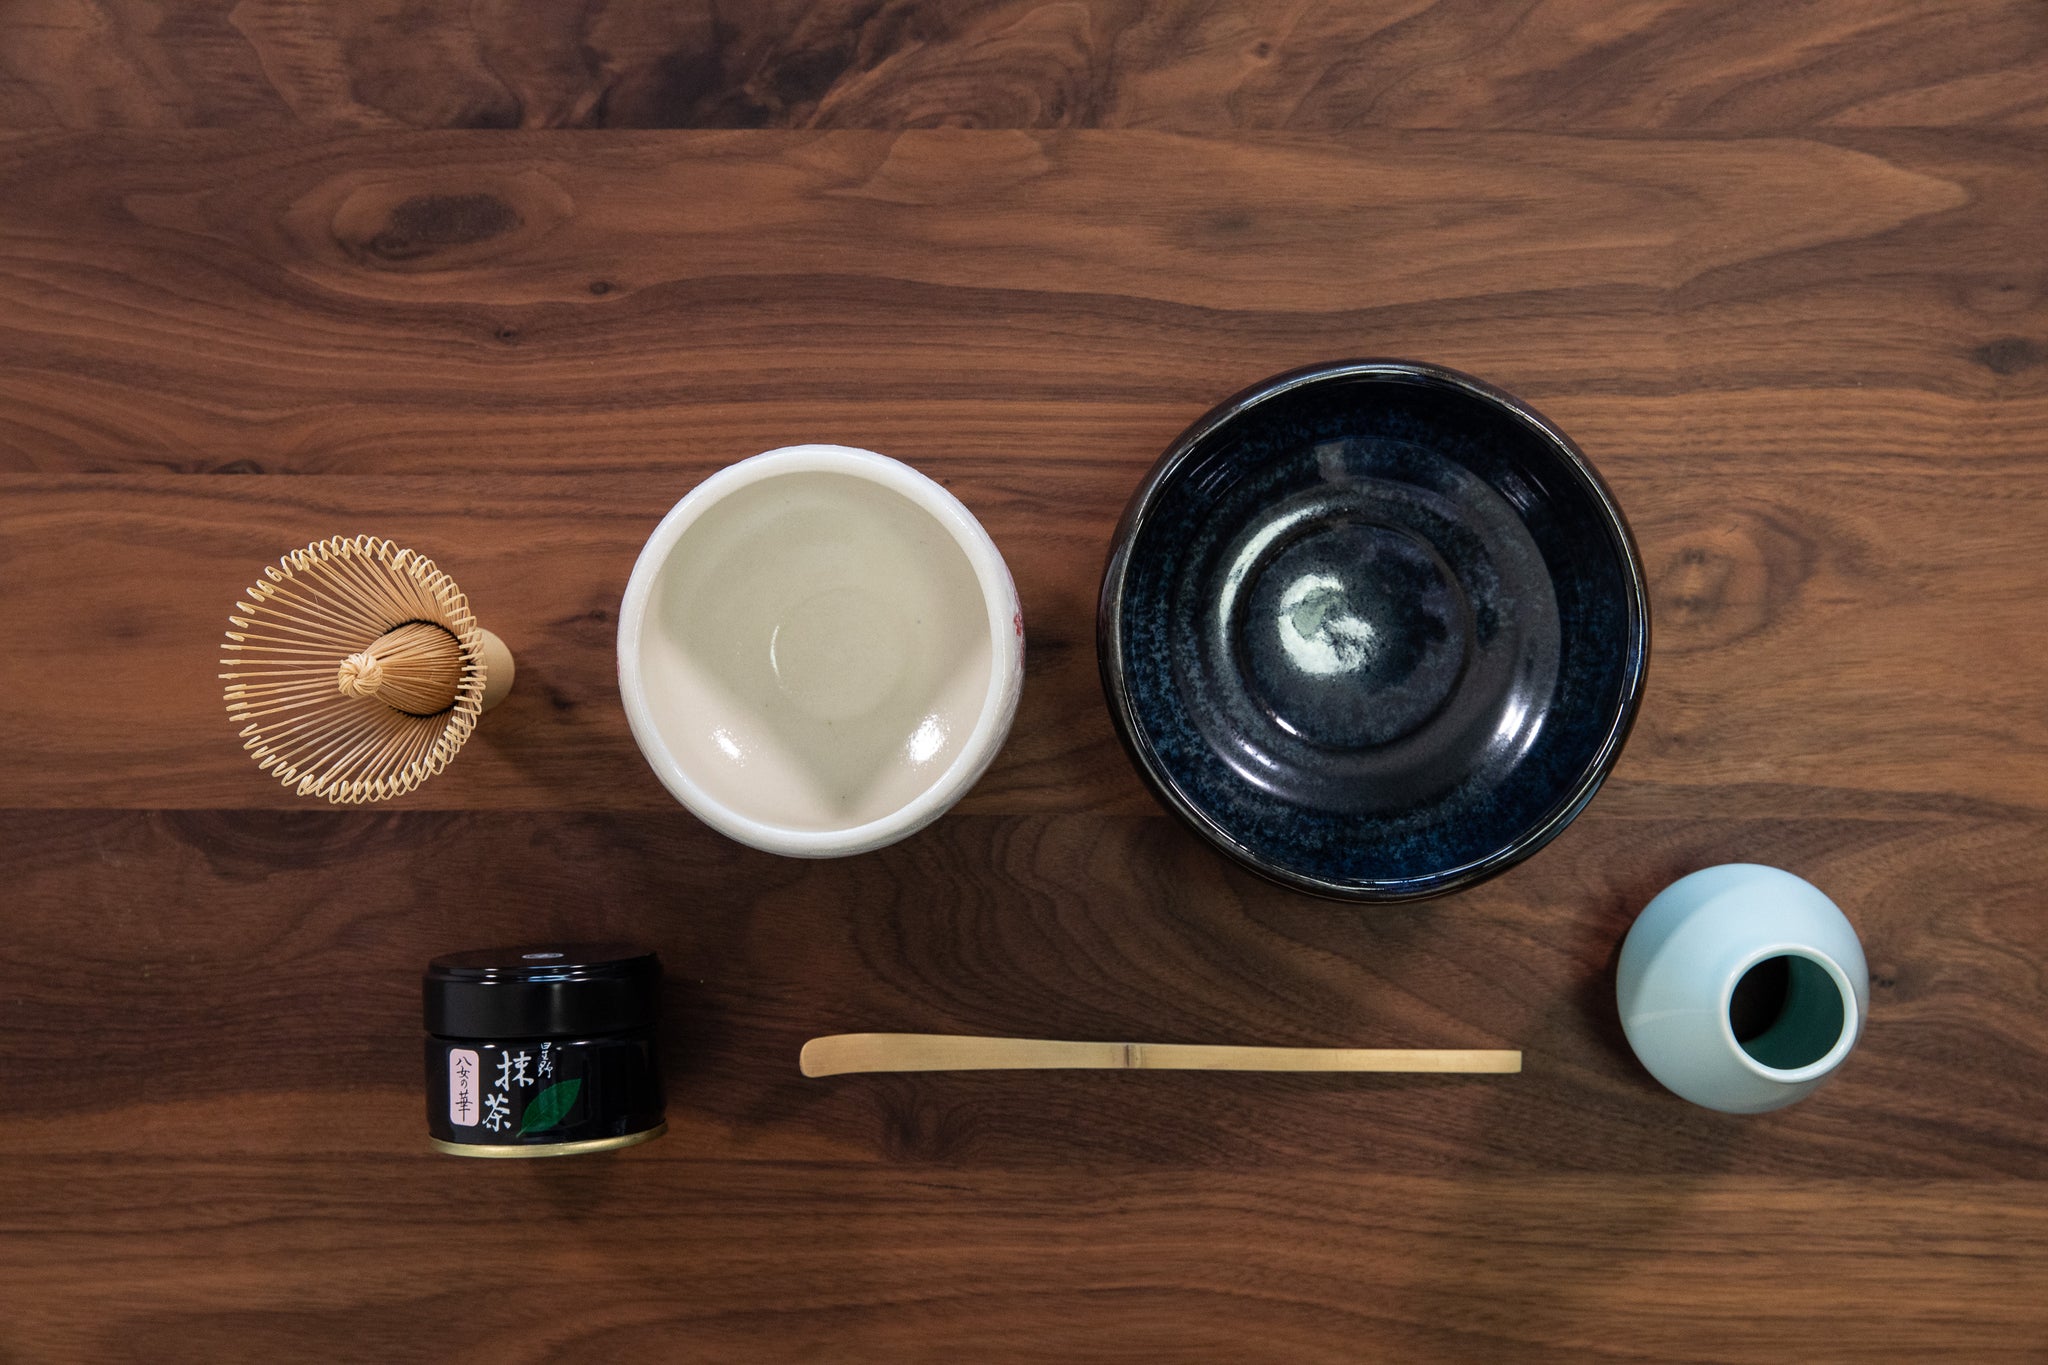 日本一の玉露の品質を誇る福岡 星野村より 可愛いらしいお抹茶キット アソビュー ギフト